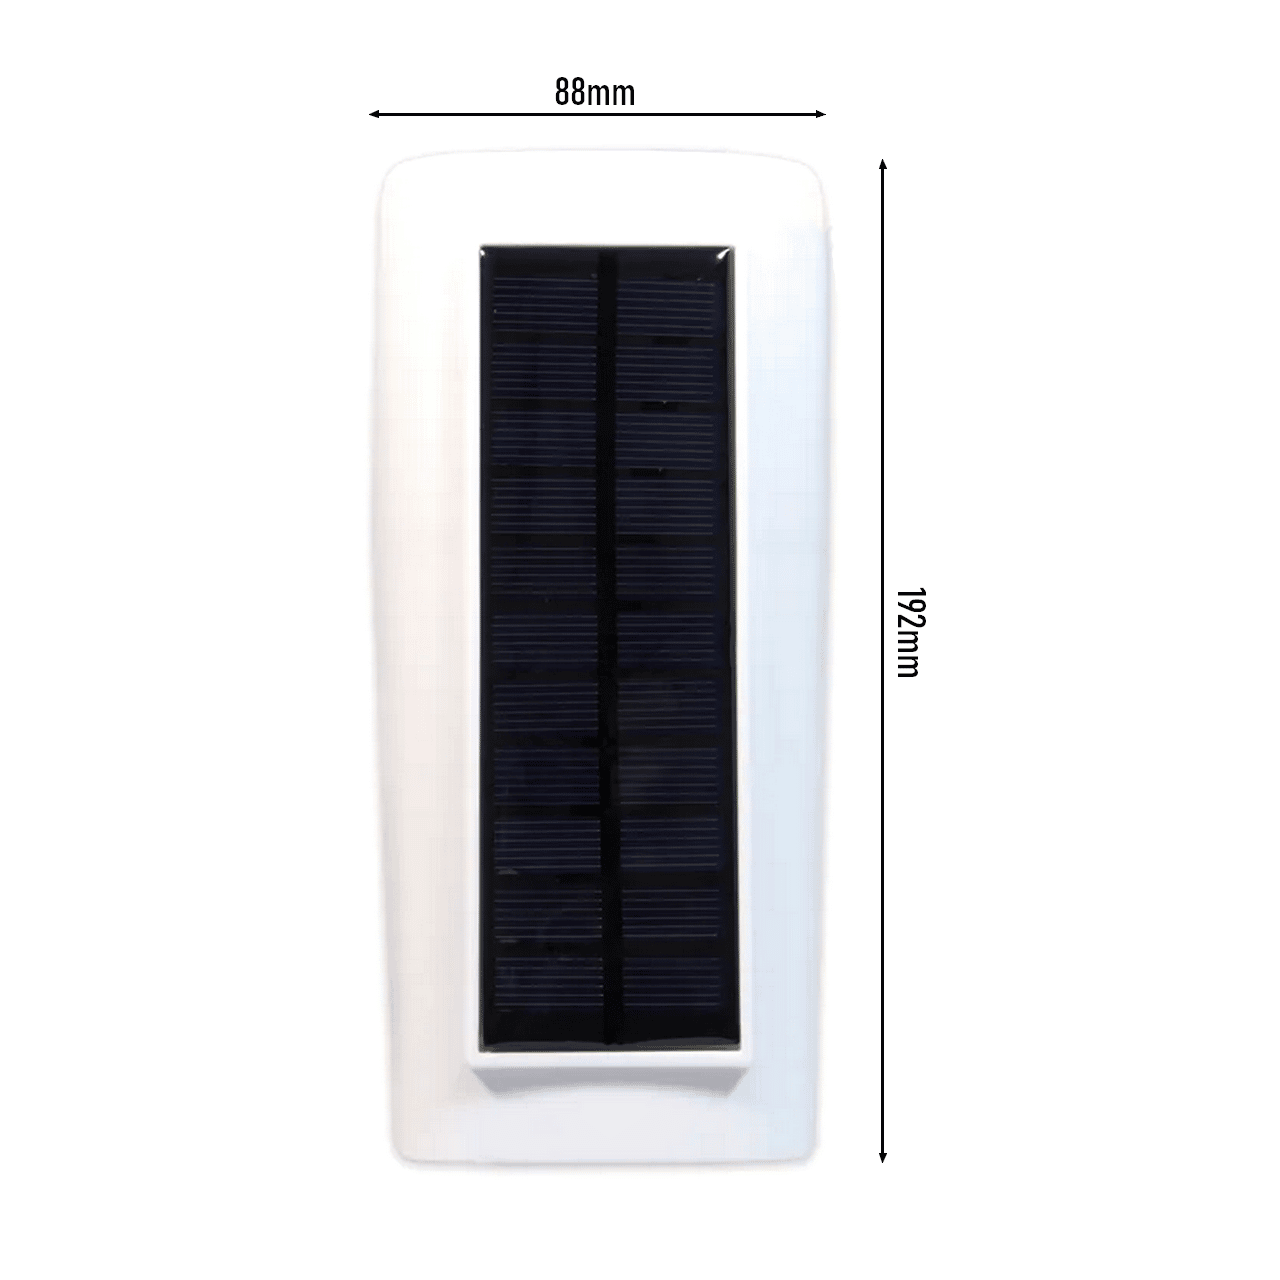 wymiary panelu solarnego w atrapie kamery